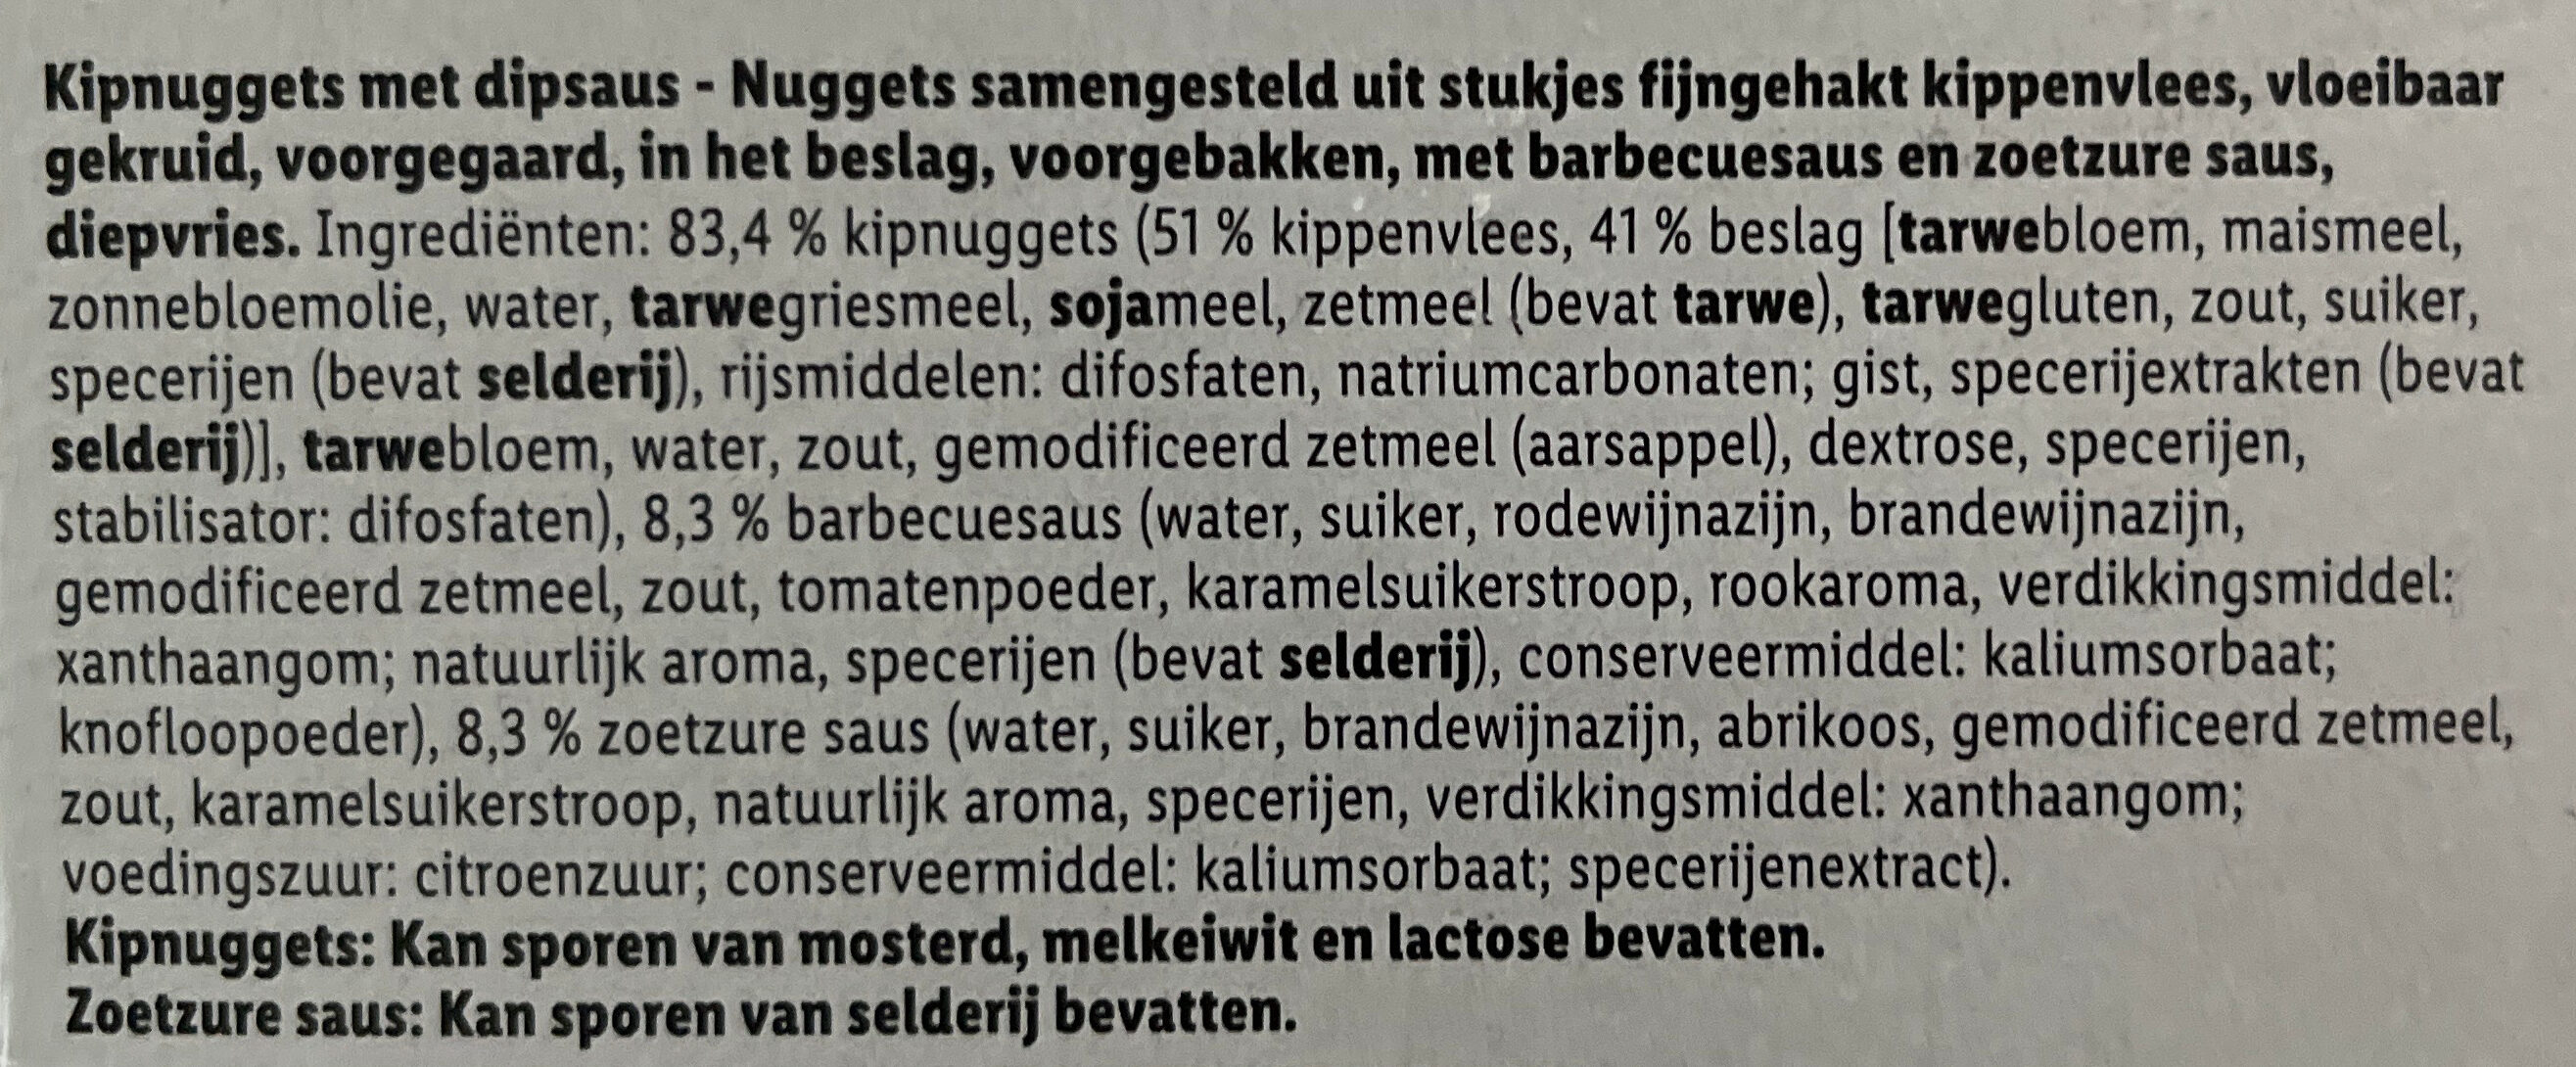 12 Chicken nuggets - Ingredients - nl